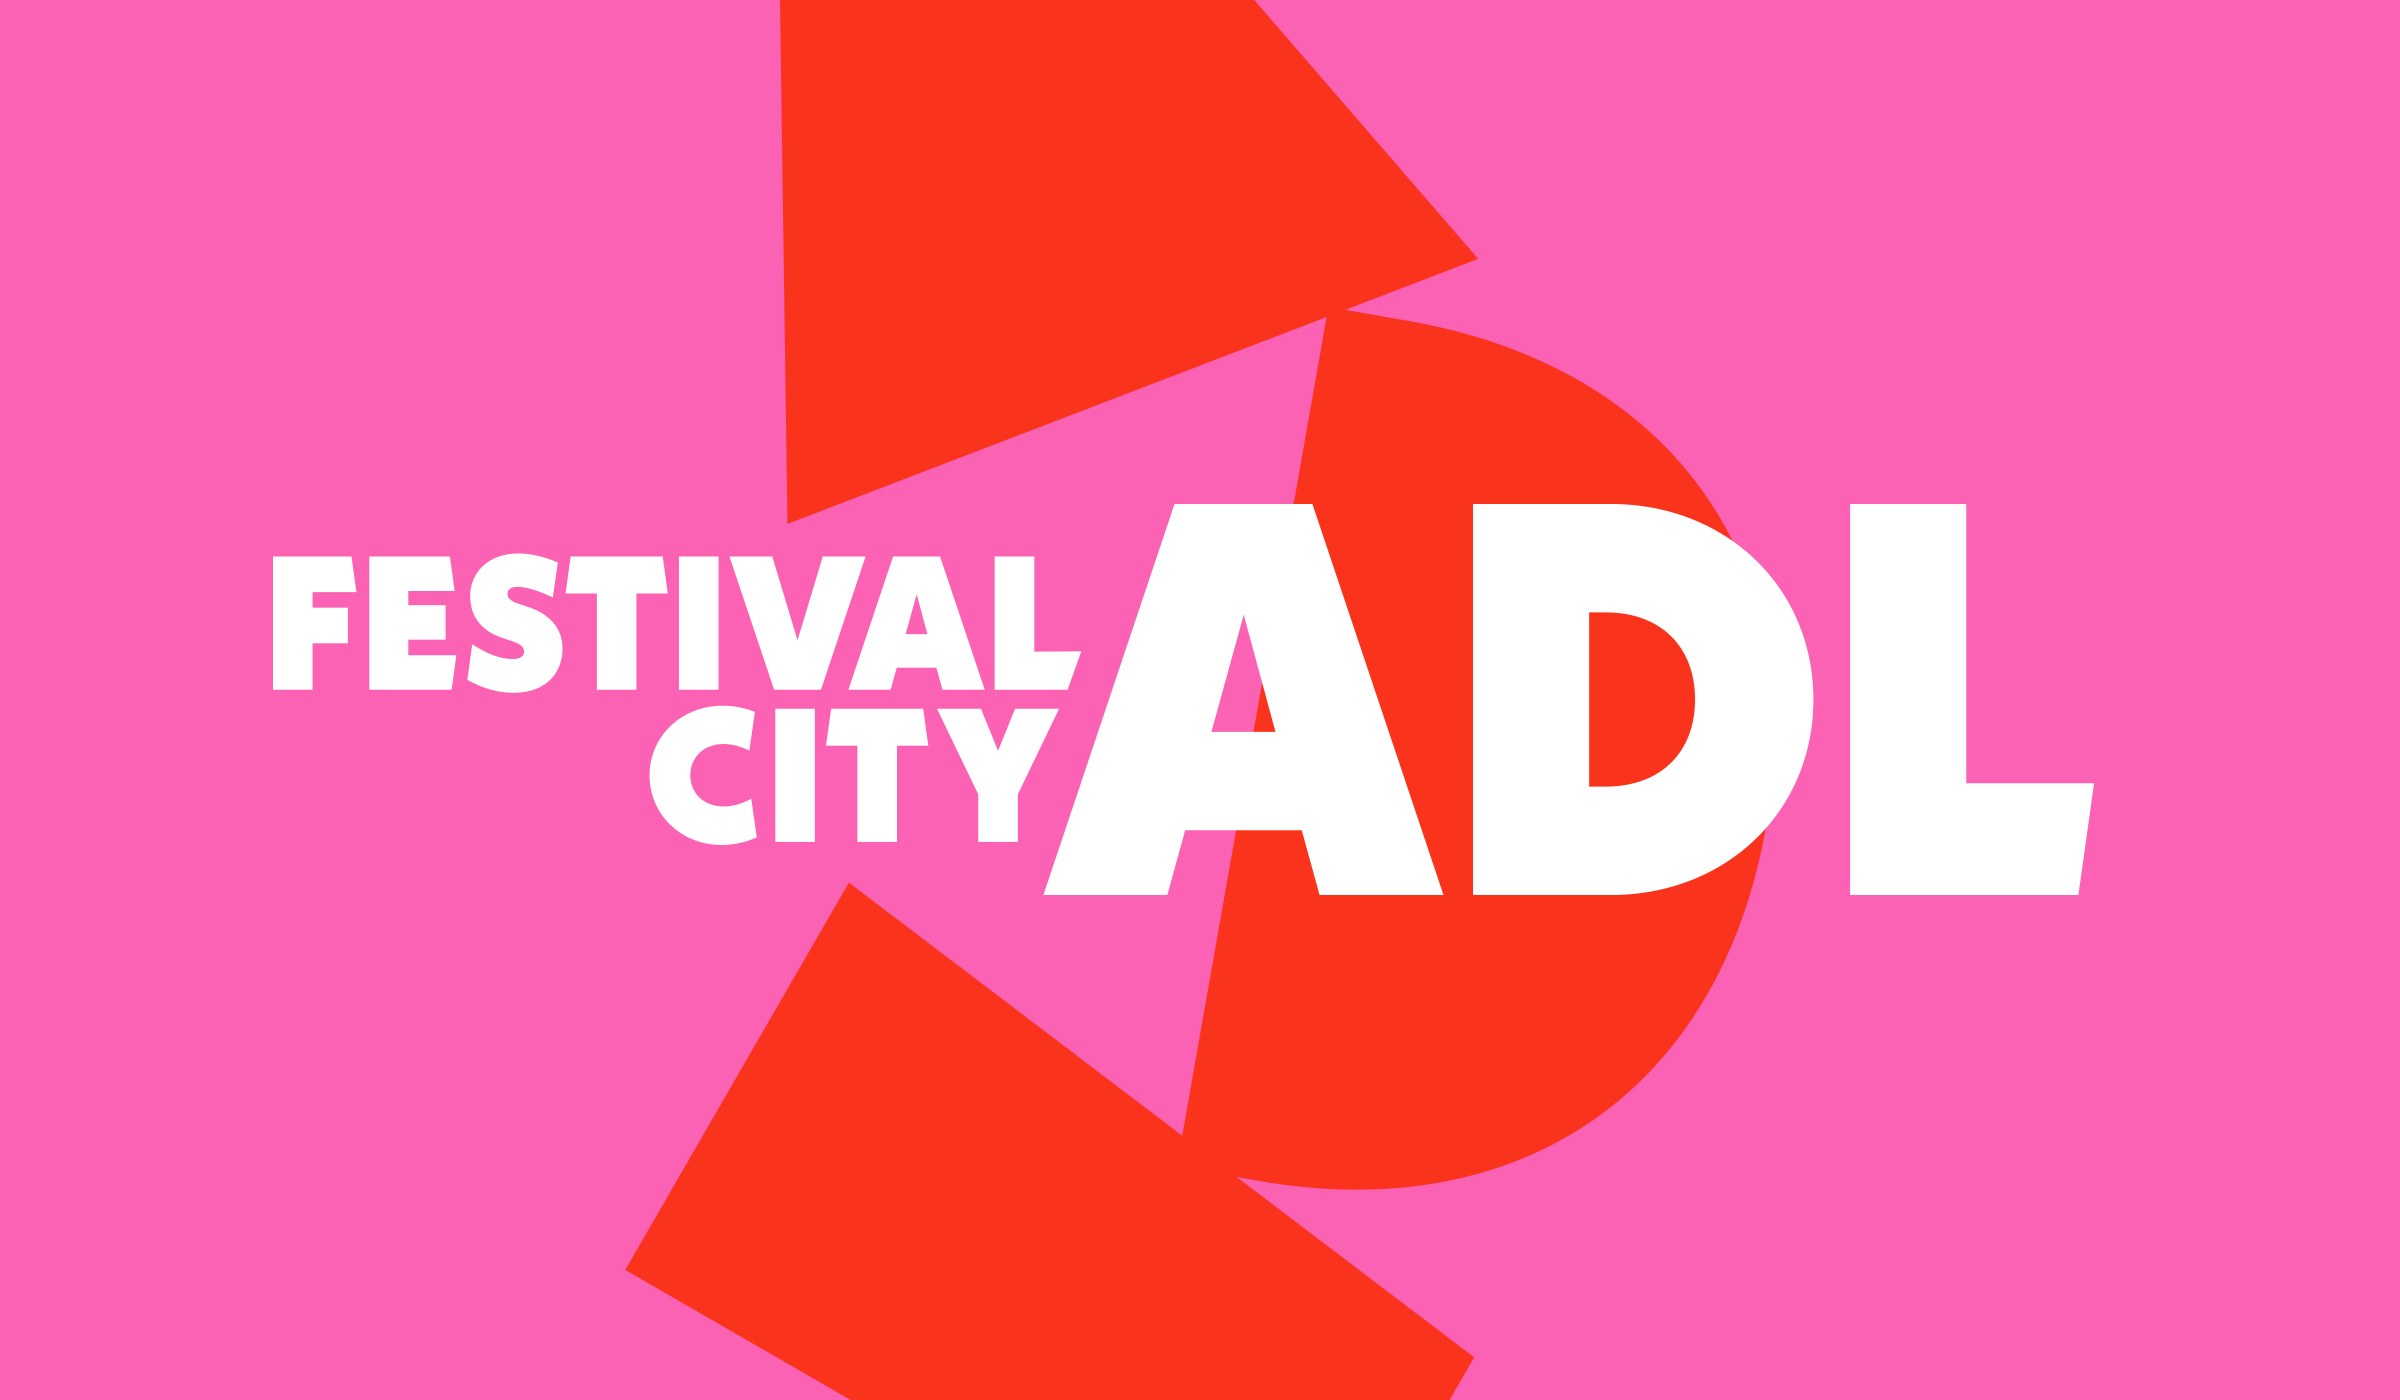 Festival City ADL brand